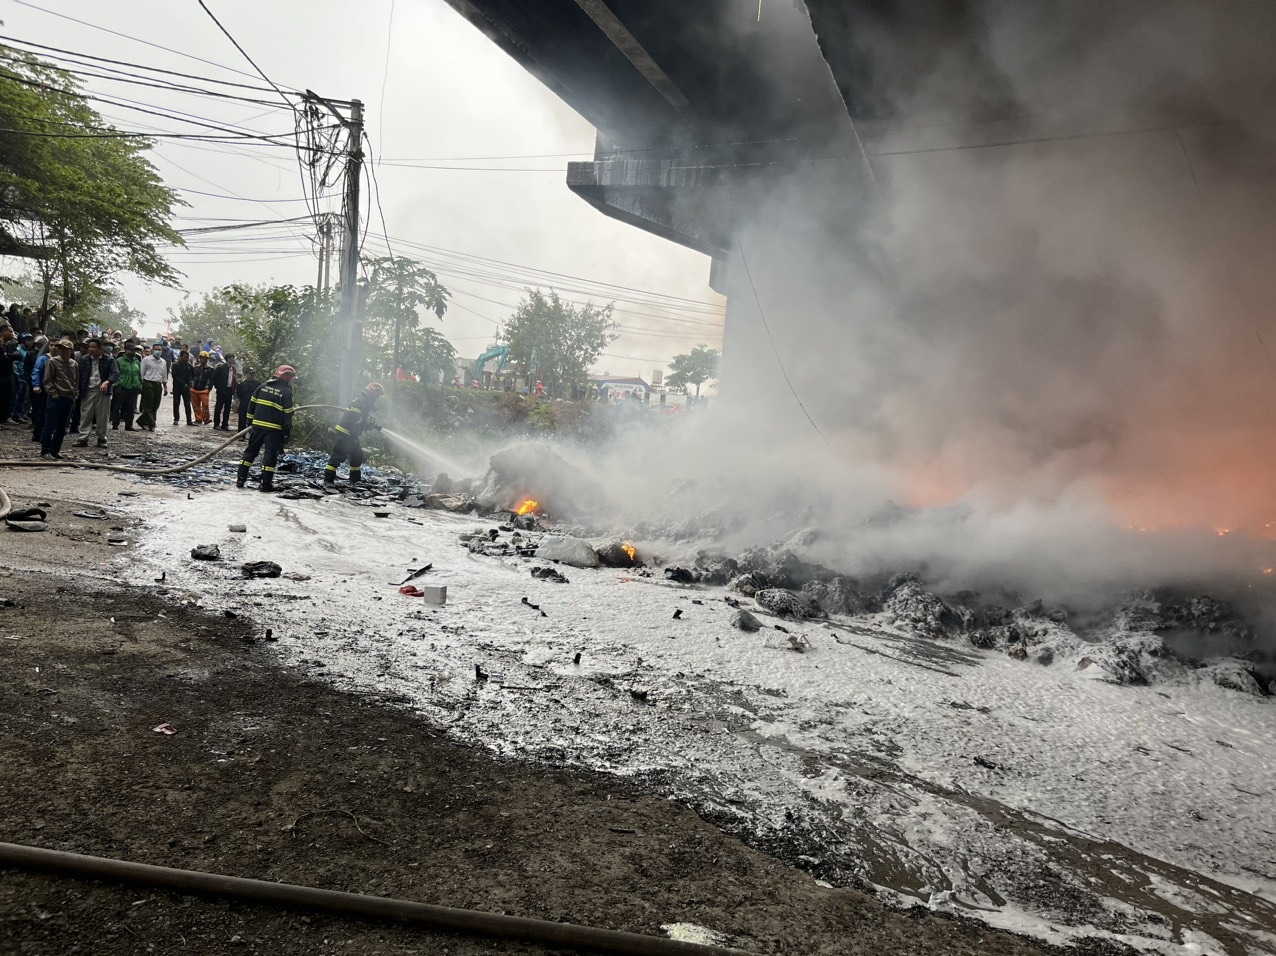 Hà Nội: Cháy bãi phế liệu gầm cầu Thăng Long, khói đen bao trùm cây cầu - 4